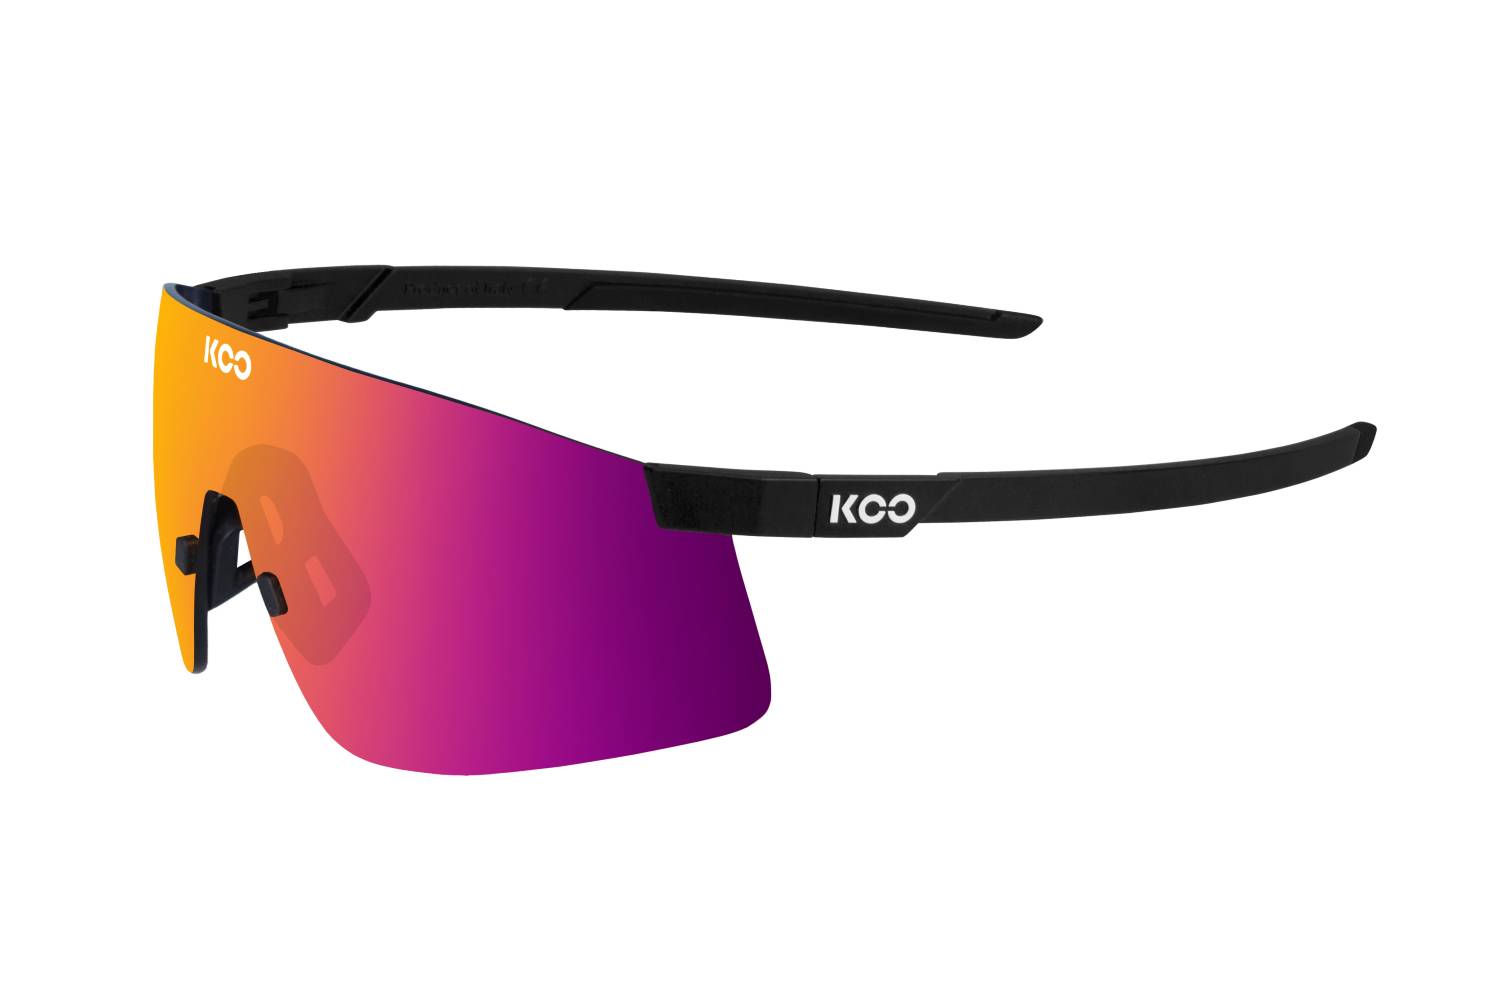 Nova di KOO Eyewear, gli occhiali per chi corre oltre i propri limiti